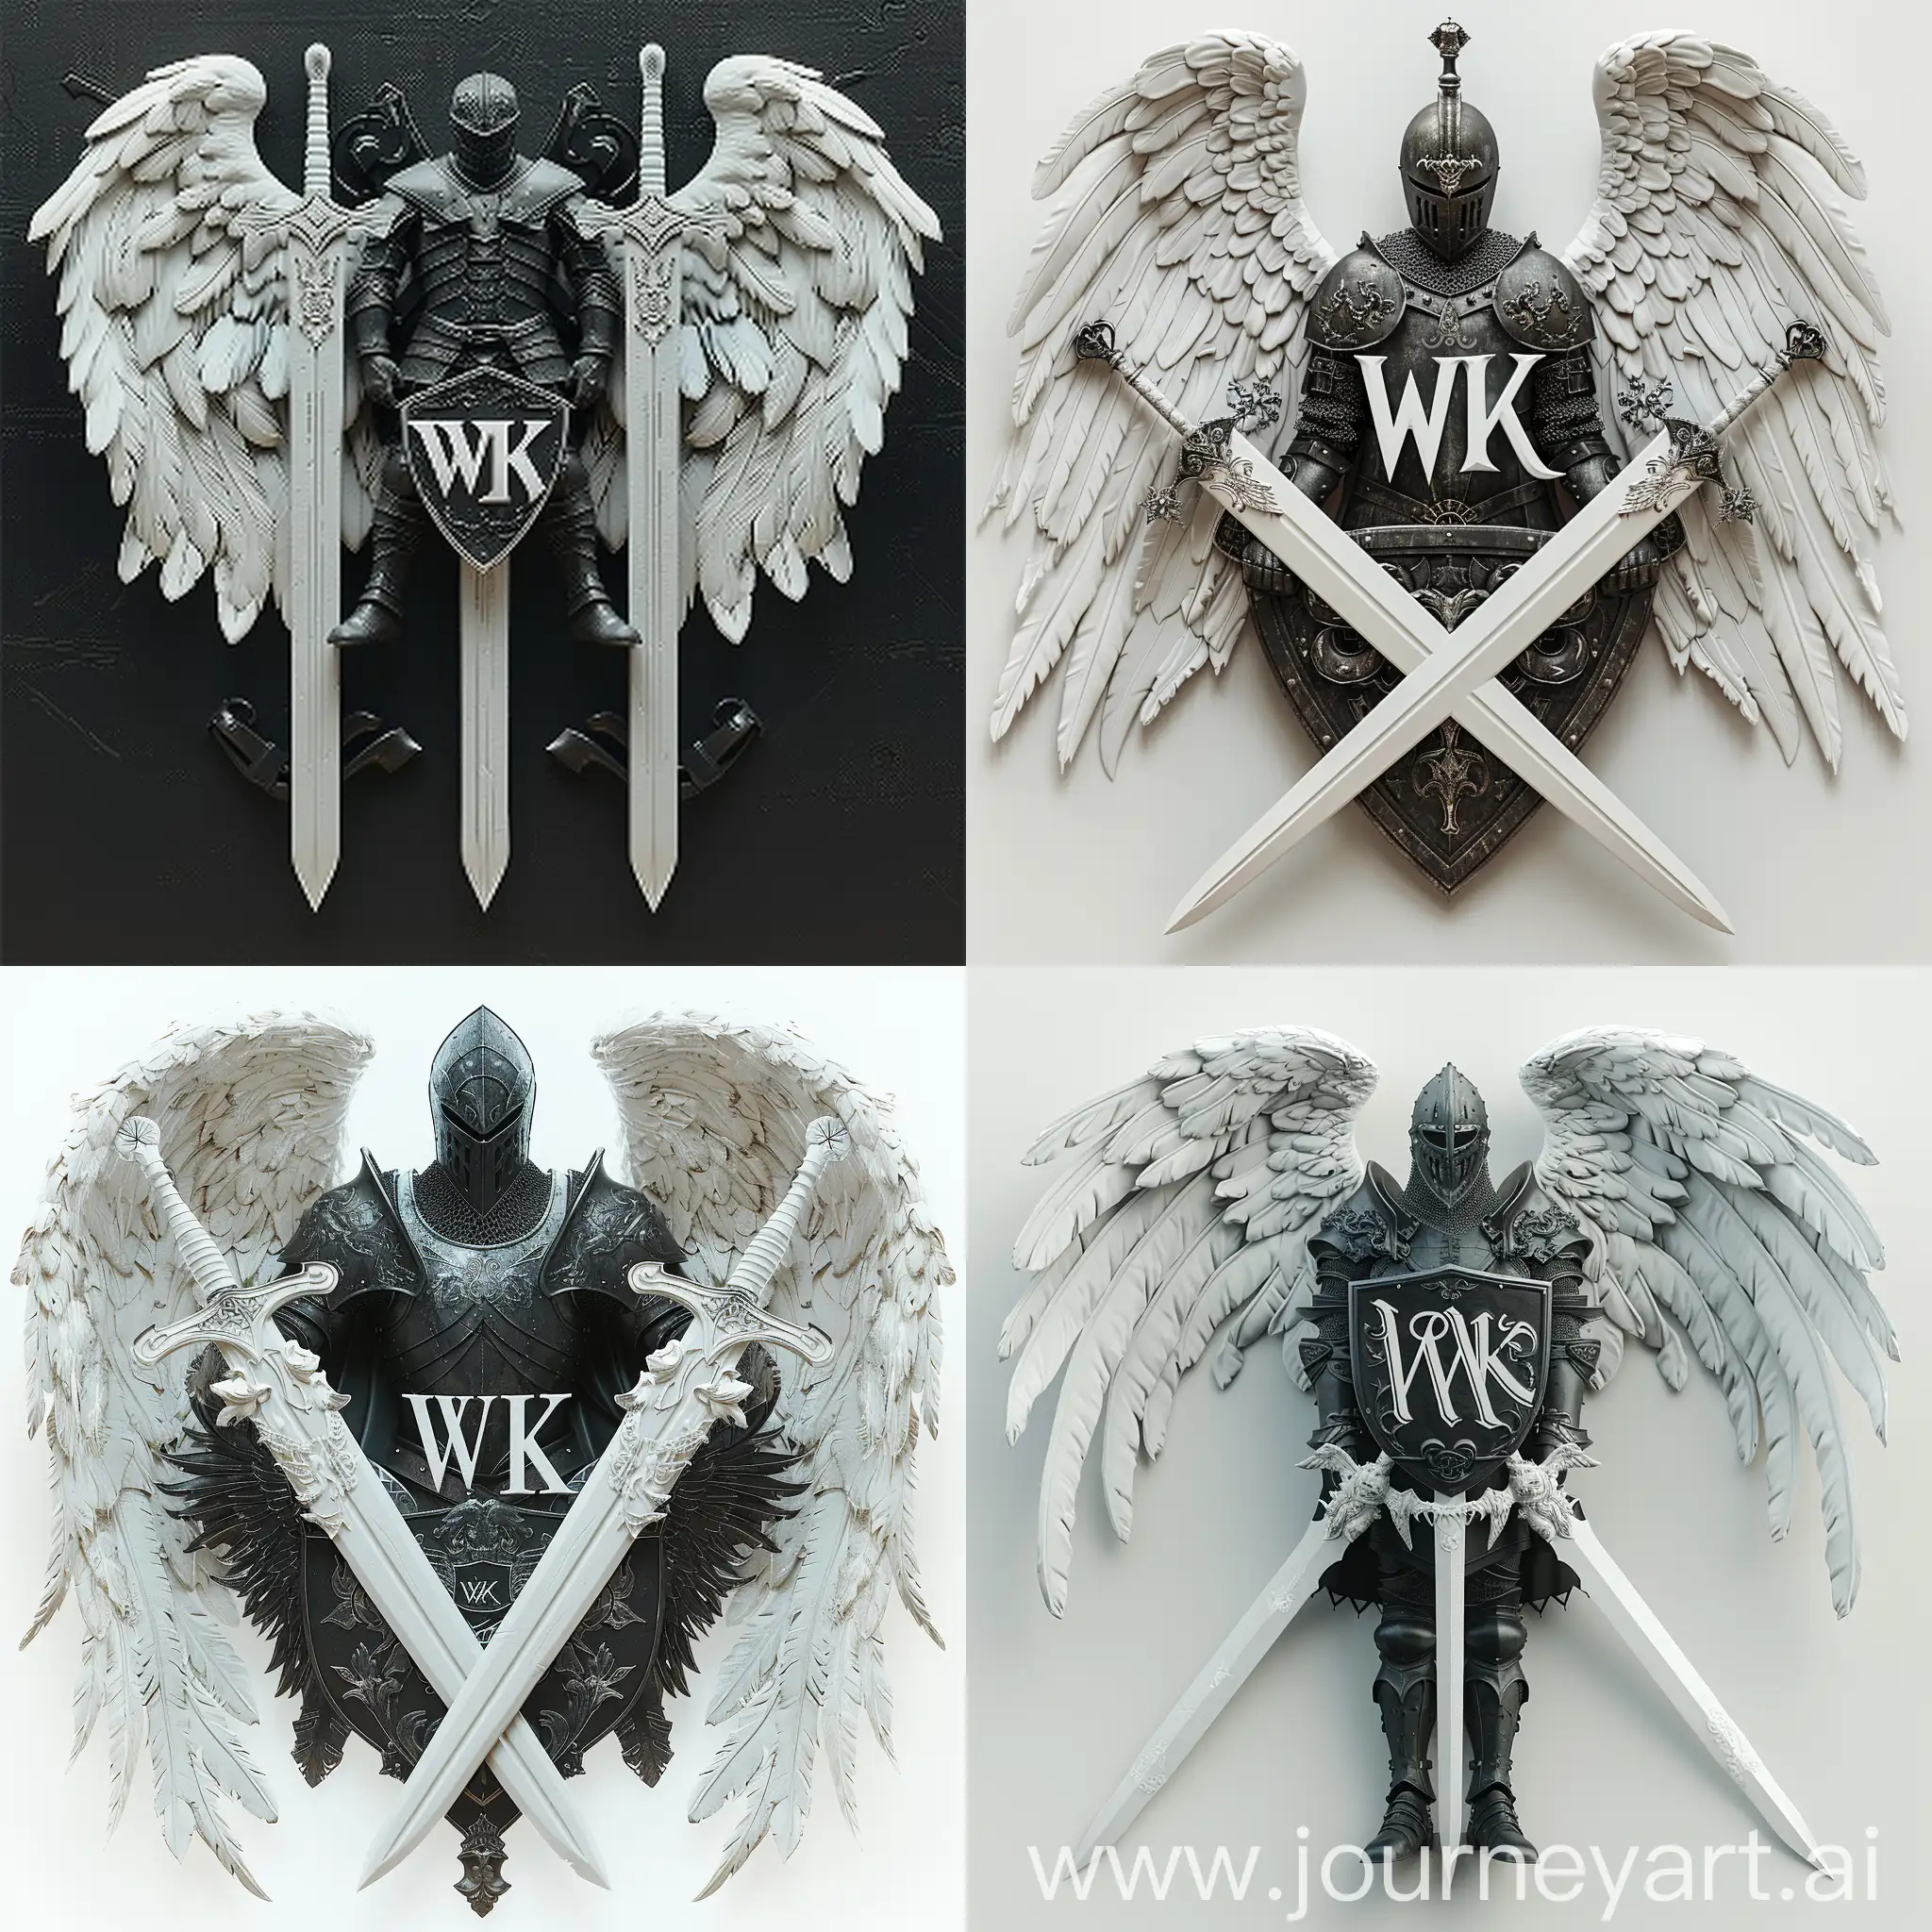 Реализм, 8K, V-ray, логотип "WK", где буквы "WK" стилизованы в форме двух переплетающихся мечей с орнаментами на лезвиях, белые мечи, белые крылья, между мечами изображен черный рыцарь в боевой позе держащий в руках щит и меч, рыцарь представлен в доспехах с символикой, отражающей его мощь и благородство, цветовая гамма белый мечи, черный рыцаря, готический шрифт "WK" в форме мечей, --quality 3 --s 300